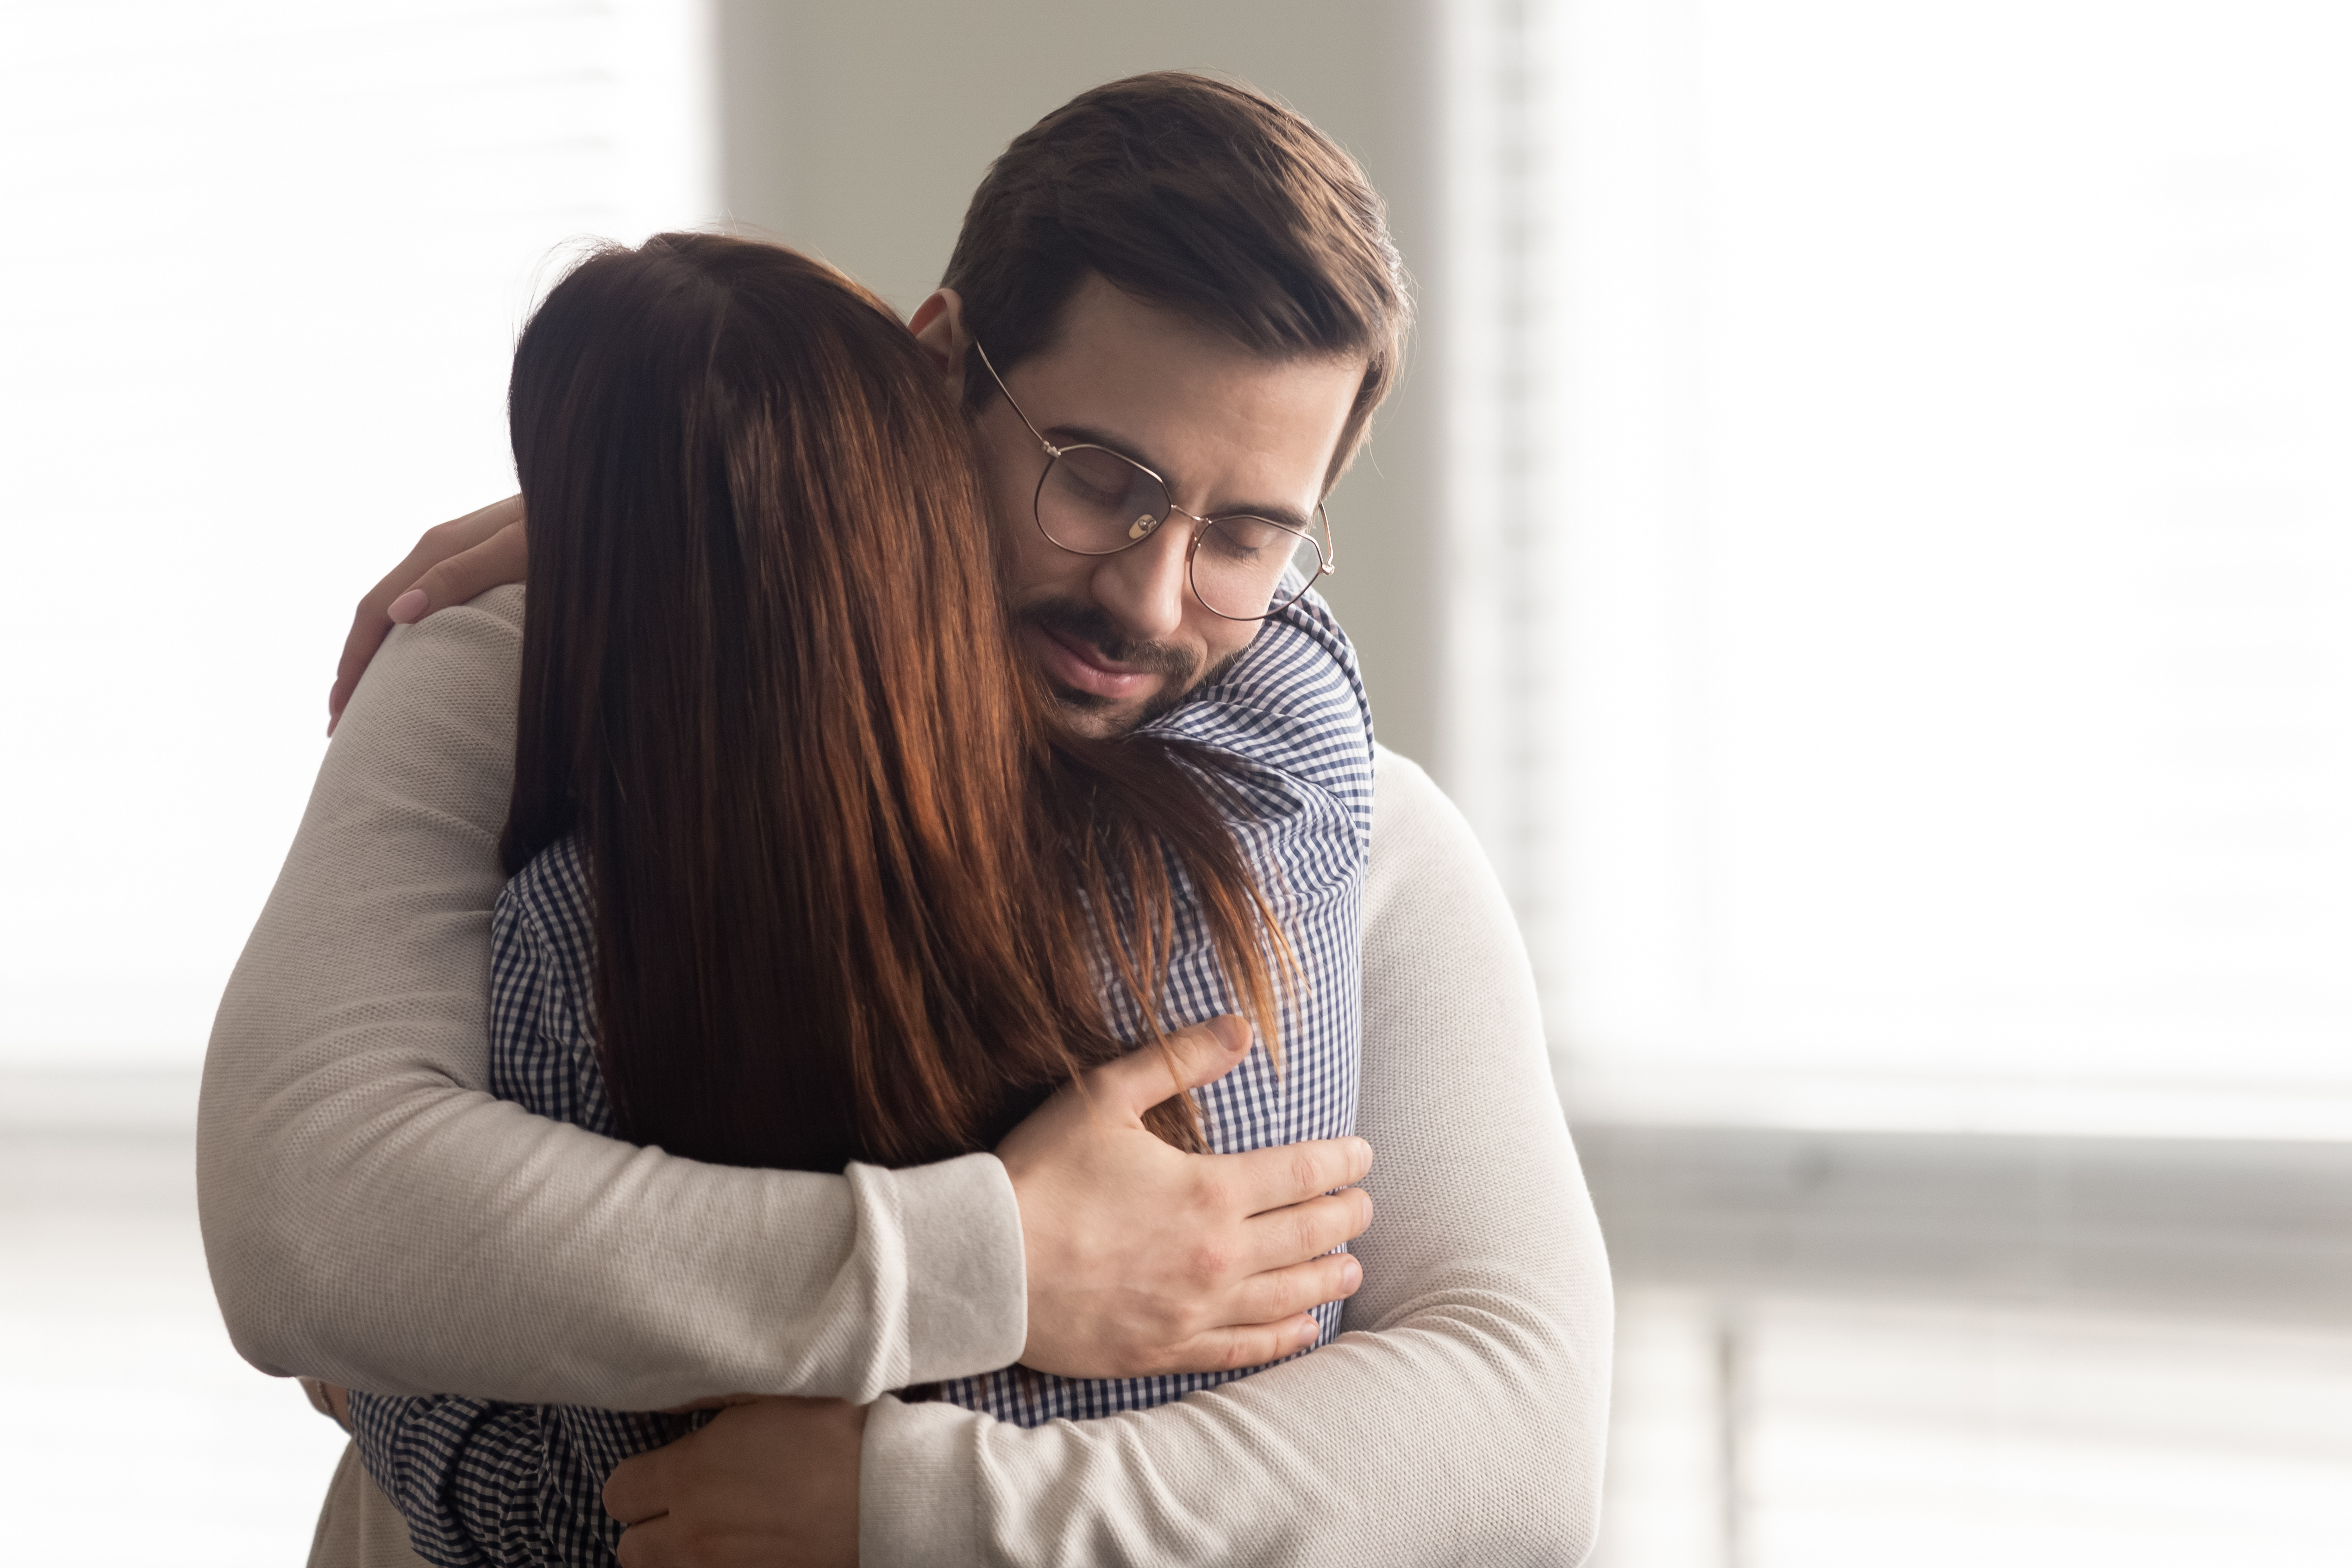 Un hombre abraza a una mujer triste | Fuente: Shutterstock.com